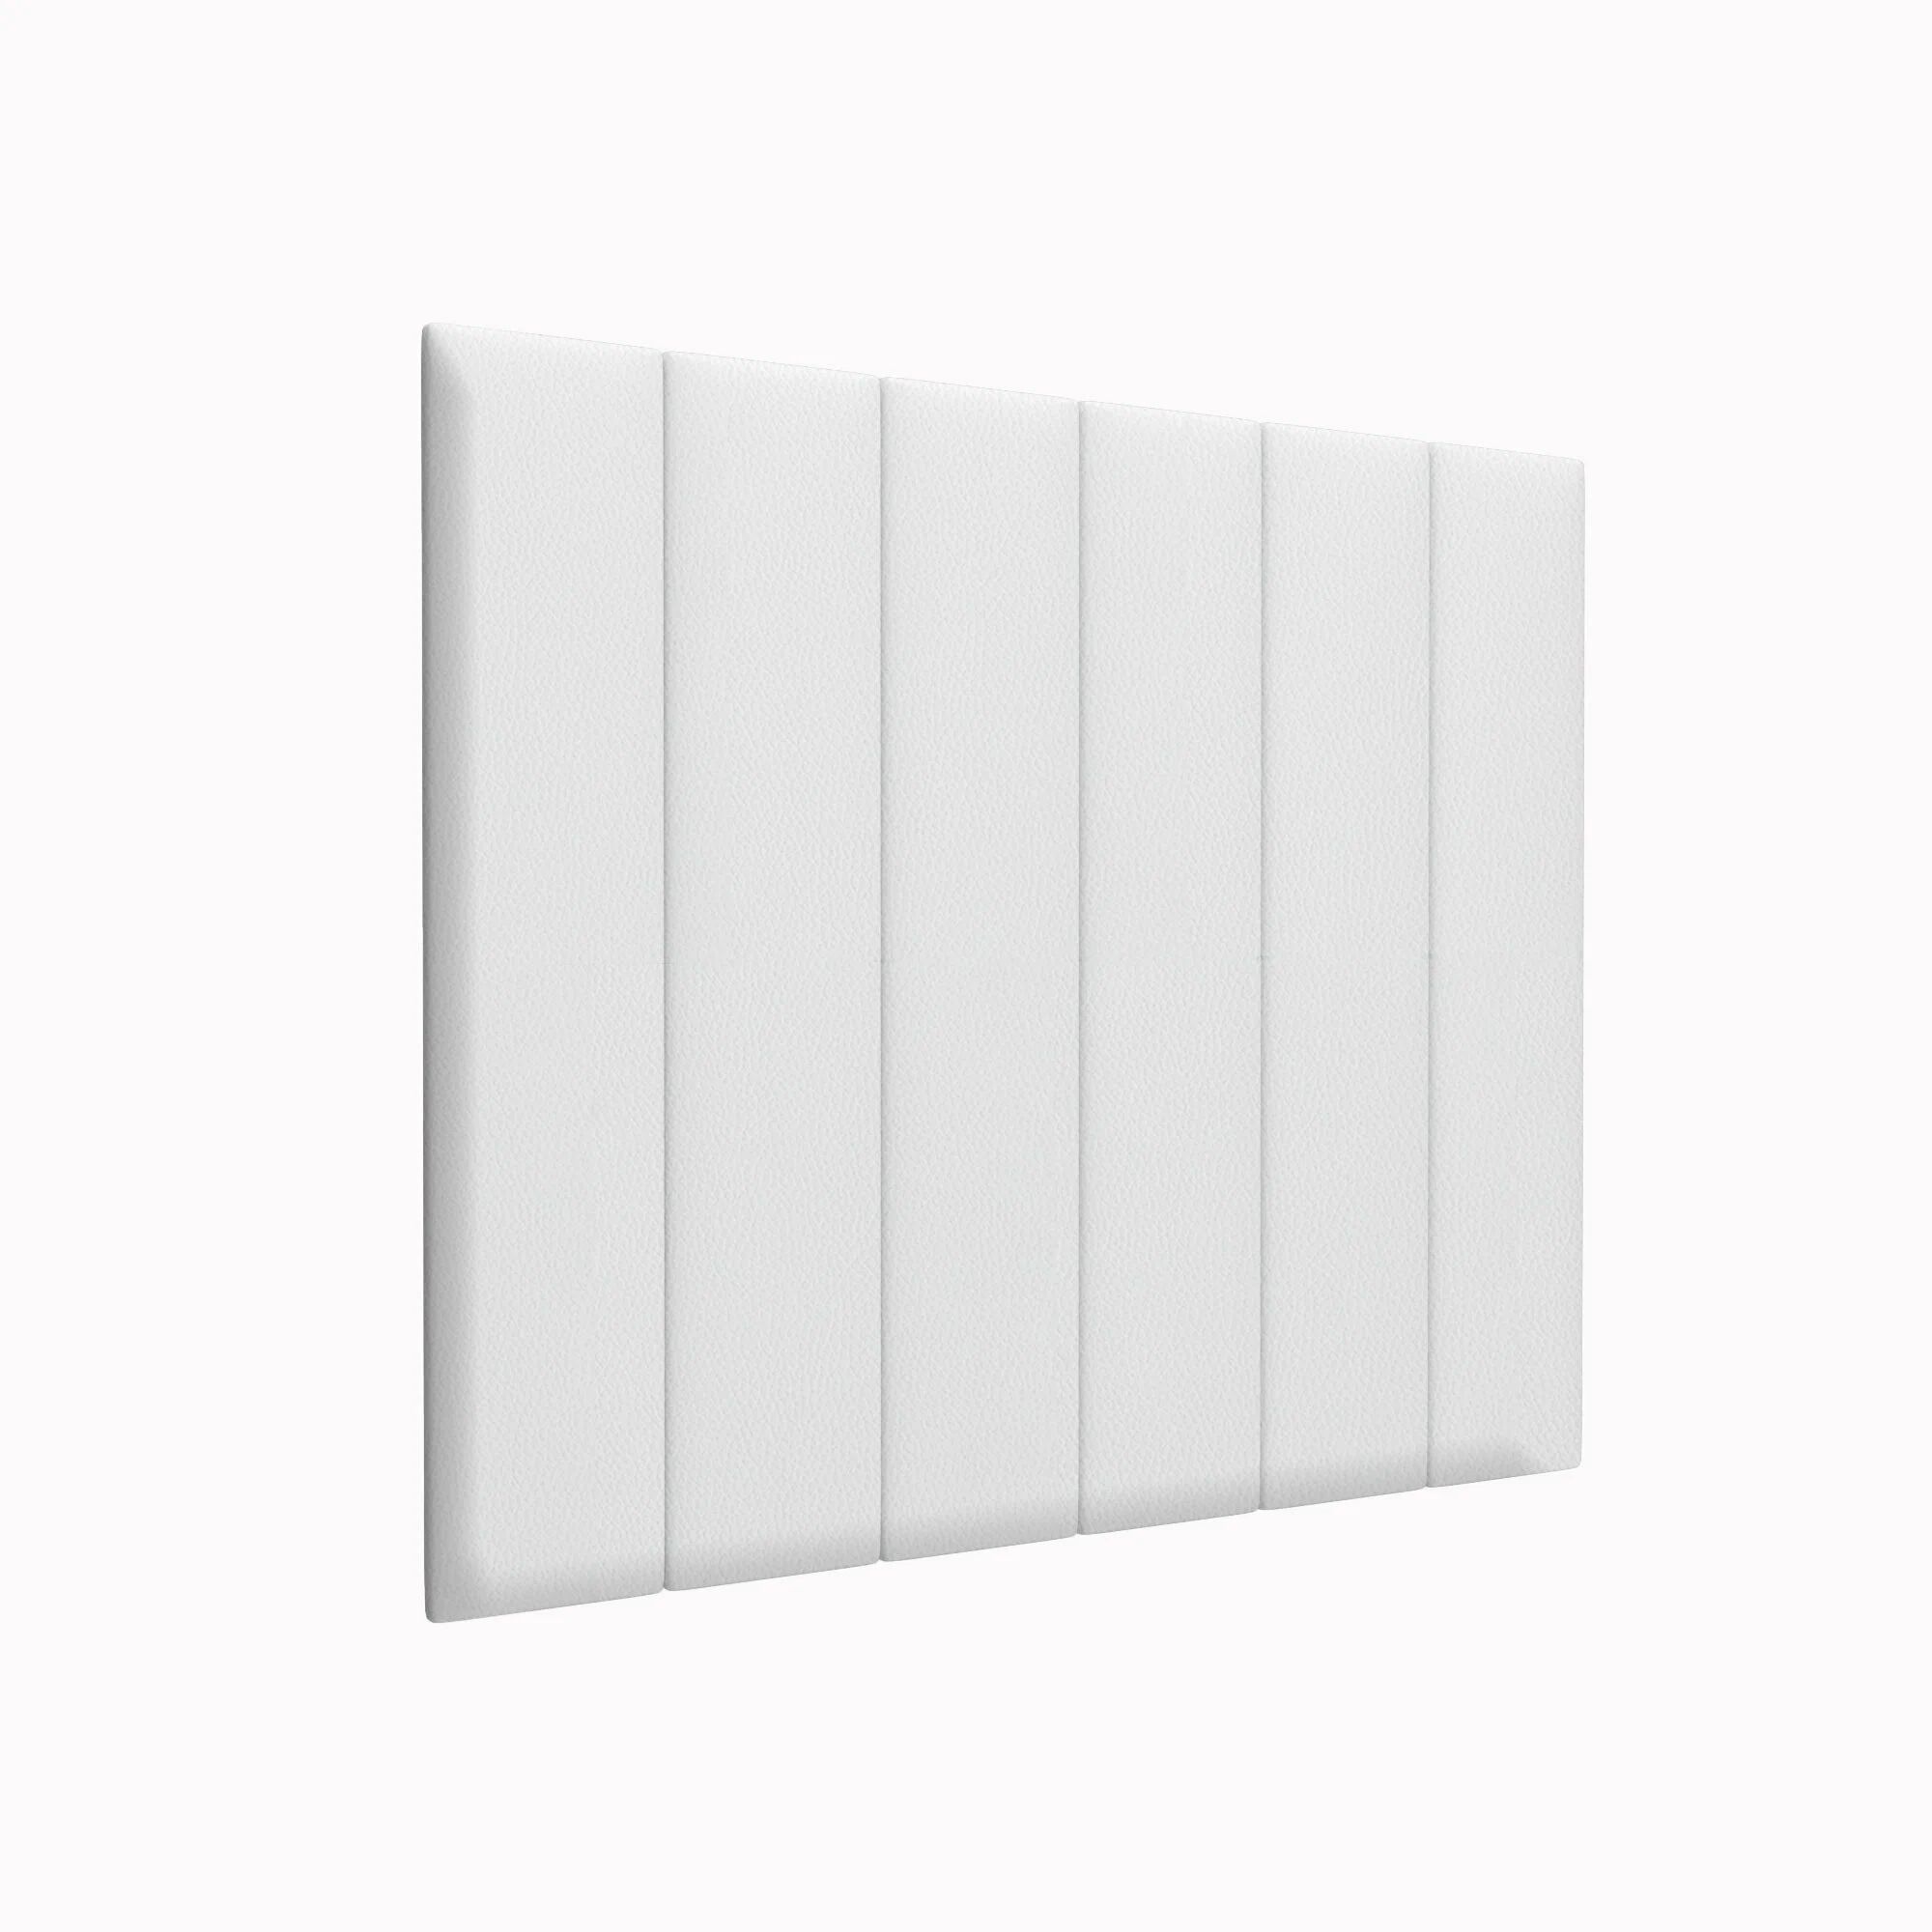 Стеновая панель Eco Leather White 20х100 см 1 шт.